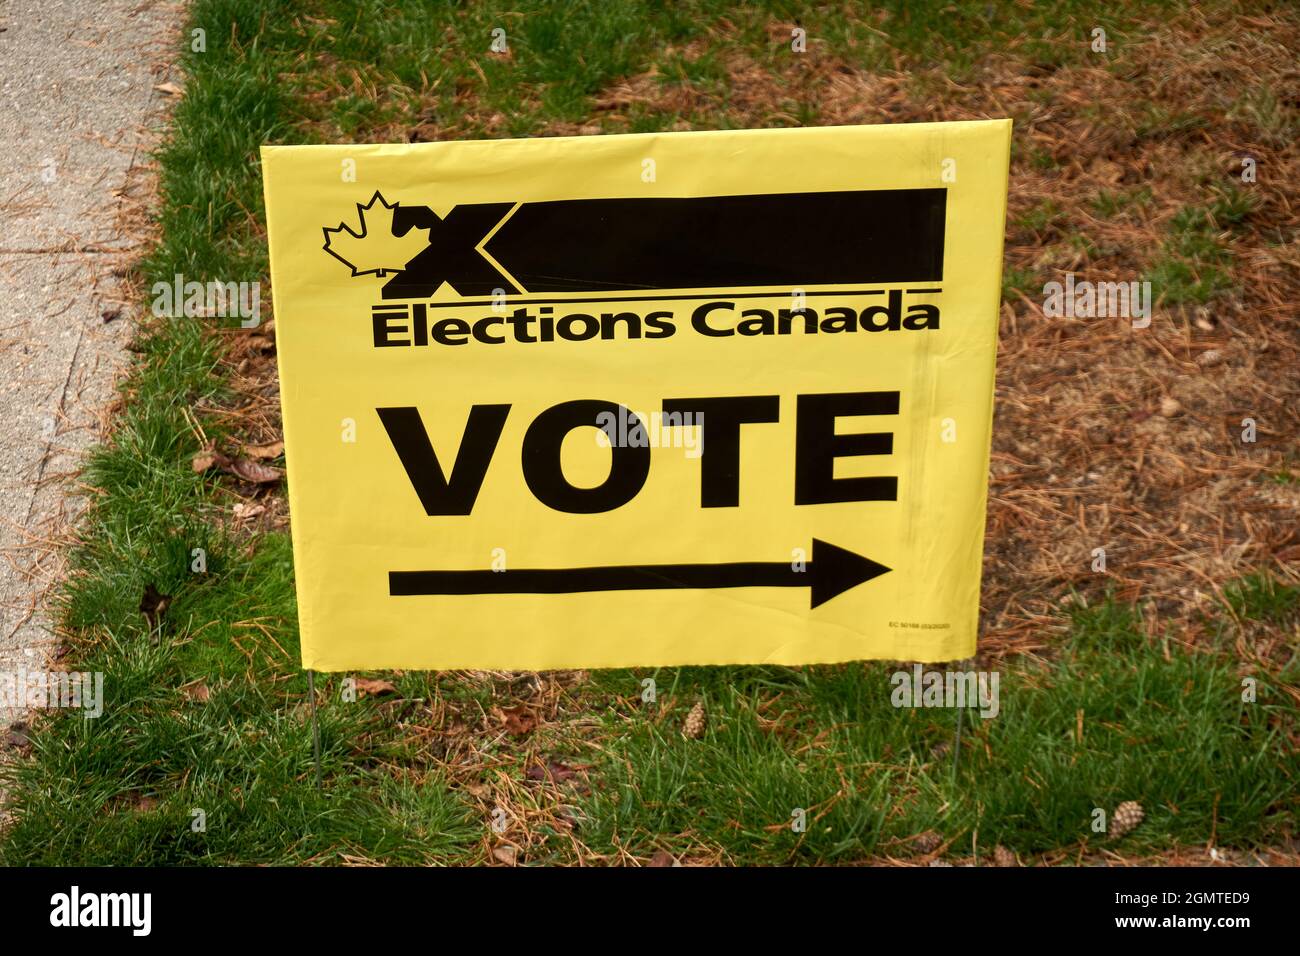 VANCOUVER, BC, CANADÁ. 20 de septiembre de 2021 -- Un signo de Elecciones Canadá señala el camino a una mesa electoral durante las elecciones federales canadienses, Foto de stock